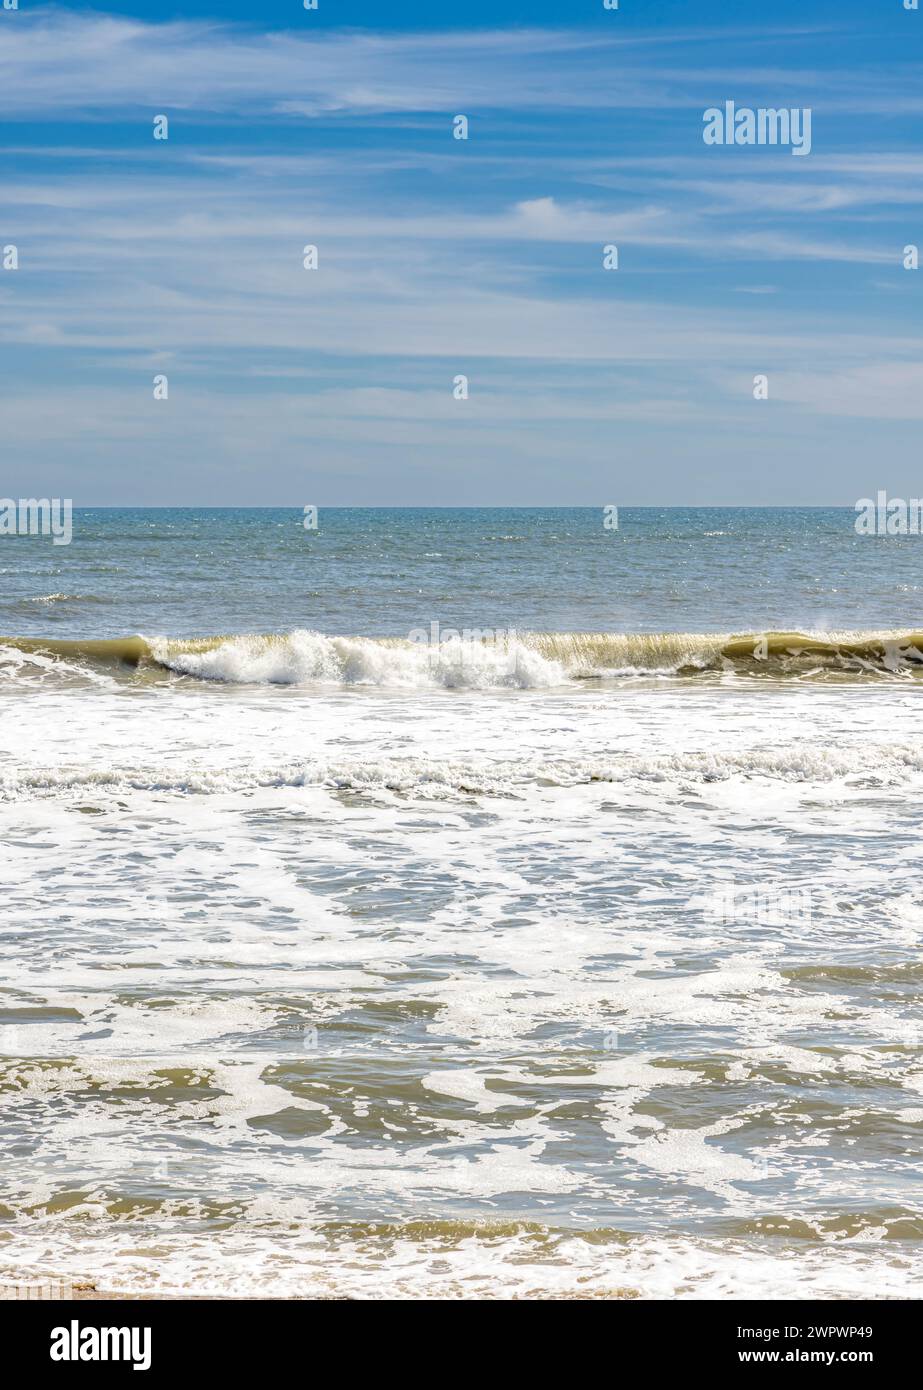 immagine verticale delle onde che arrivano su una spiaggia oceanica negli hamptons Foto Stock